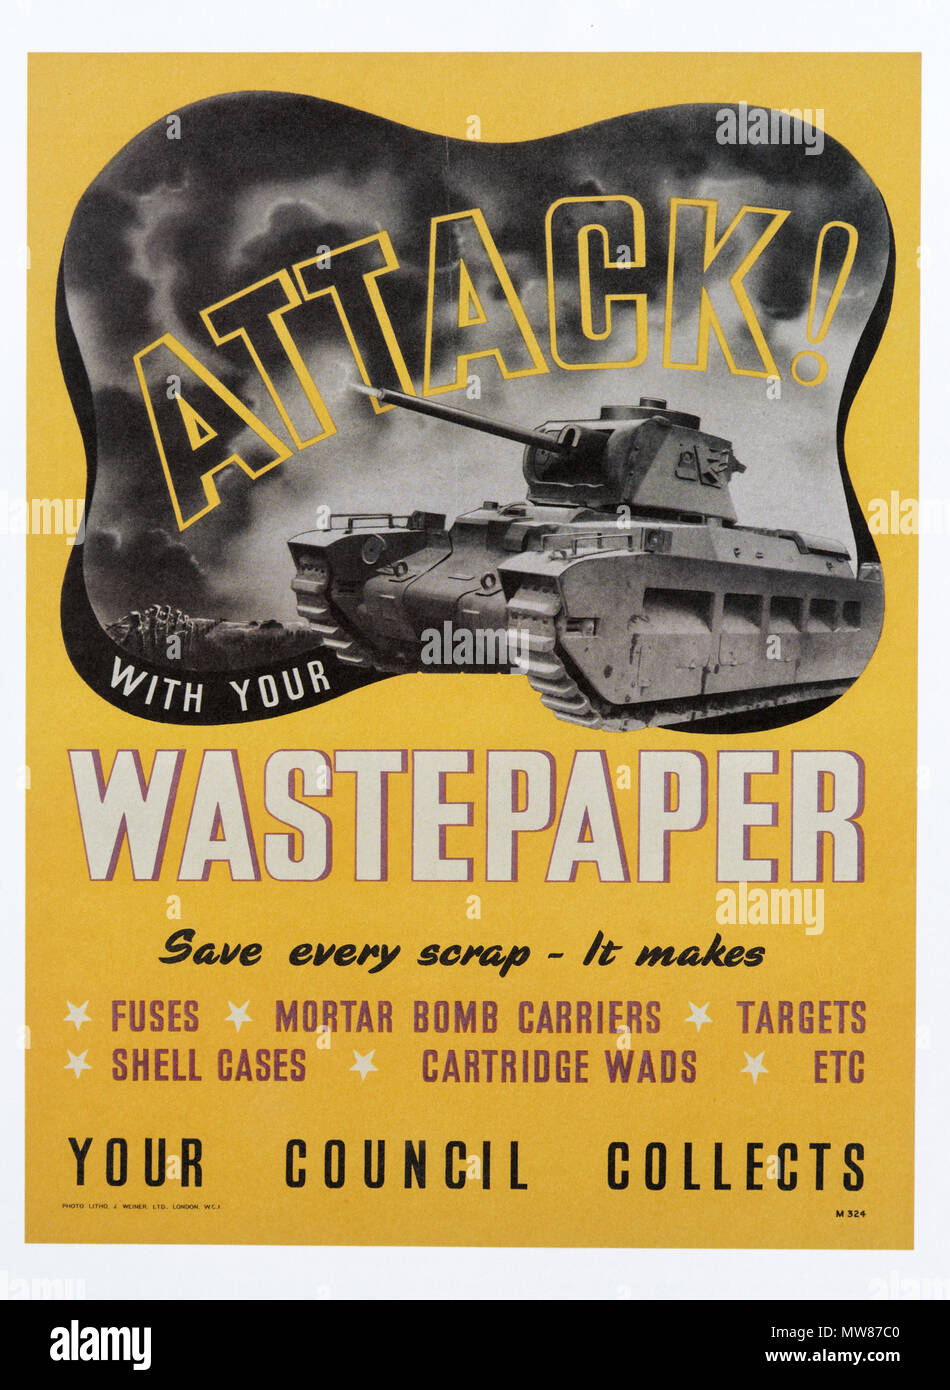 Une seconde guerre mondiale affiche annonçant la récupération, et le recyclage des déchets de papier - Attaque avec votre corbeille à papier Banque D'Images